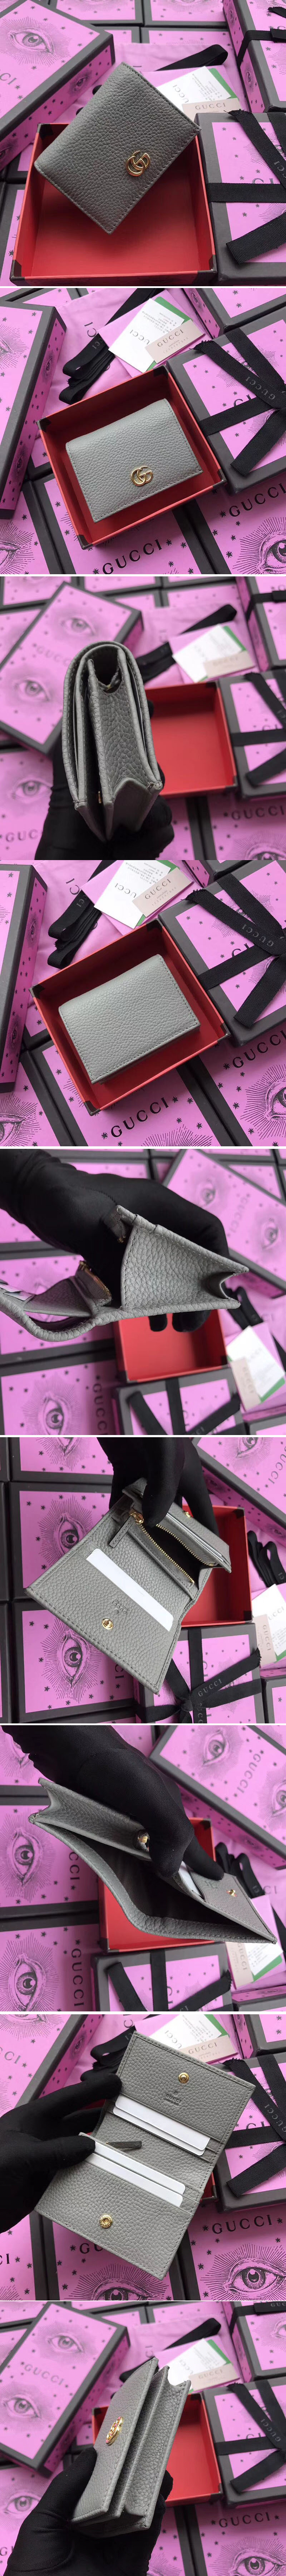 Replica Gucci 456126 Leather card case Grey